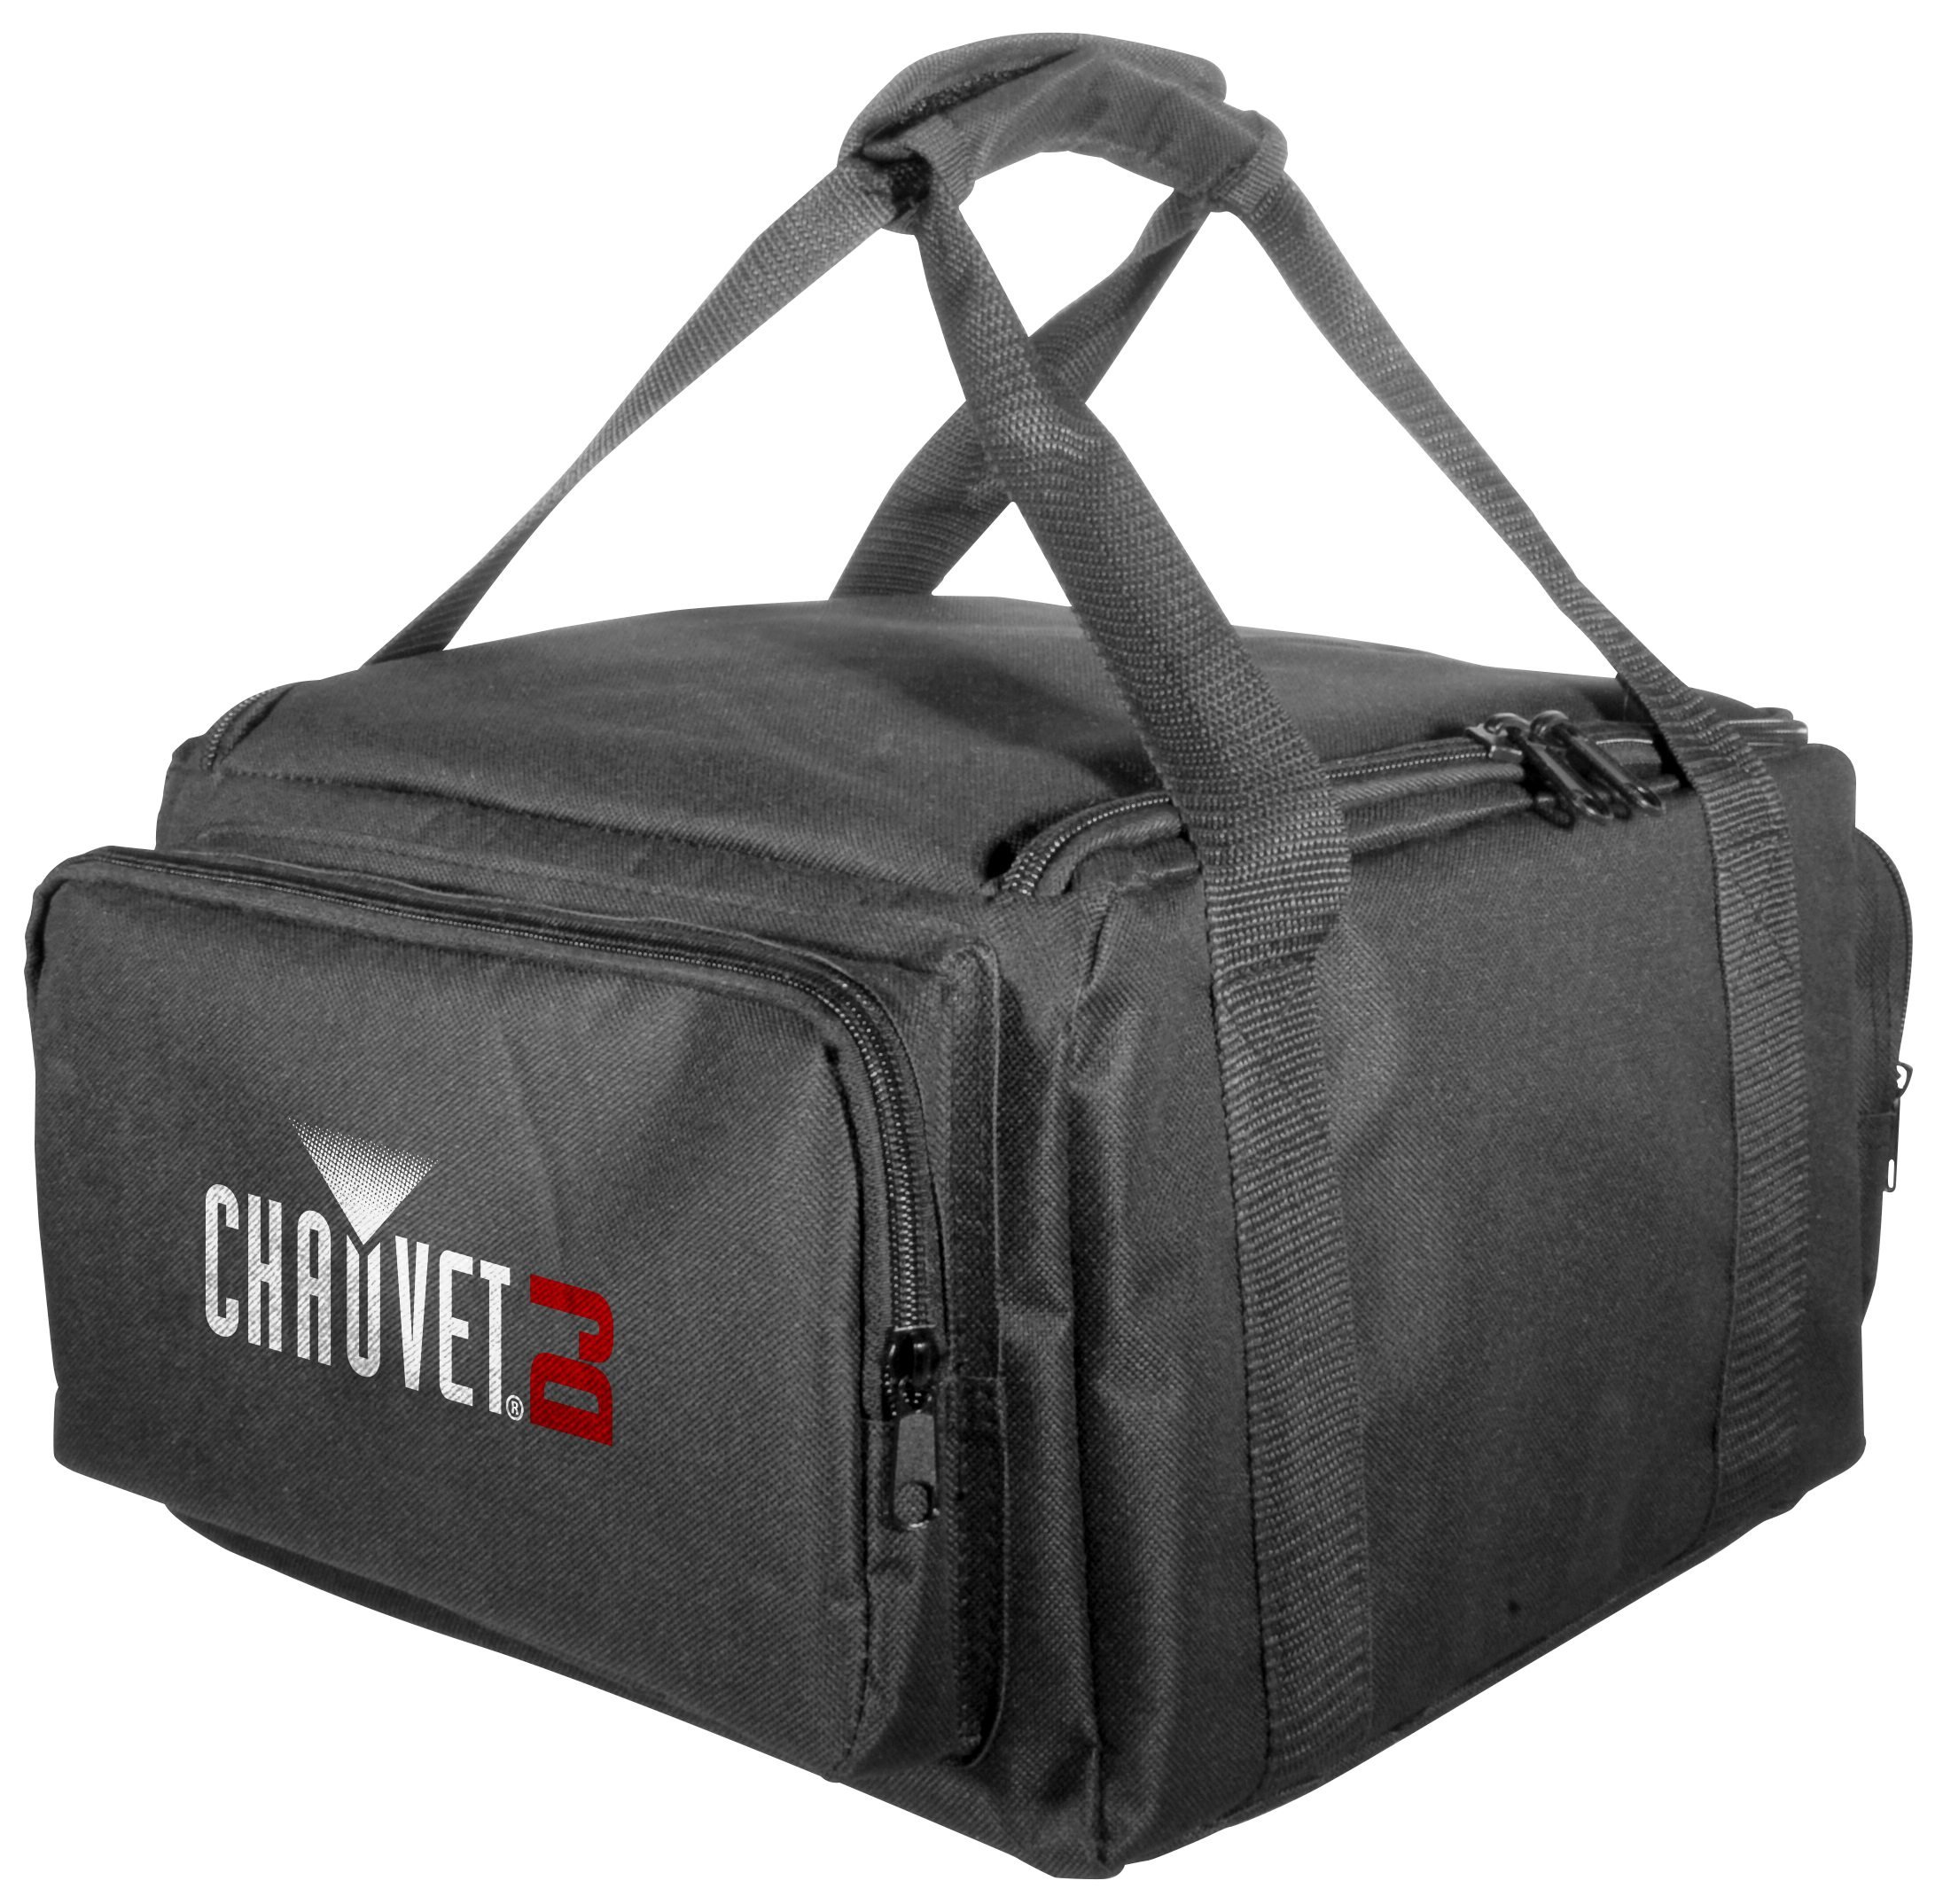 Chauvet CHS-FR4 VIP Gear Bag